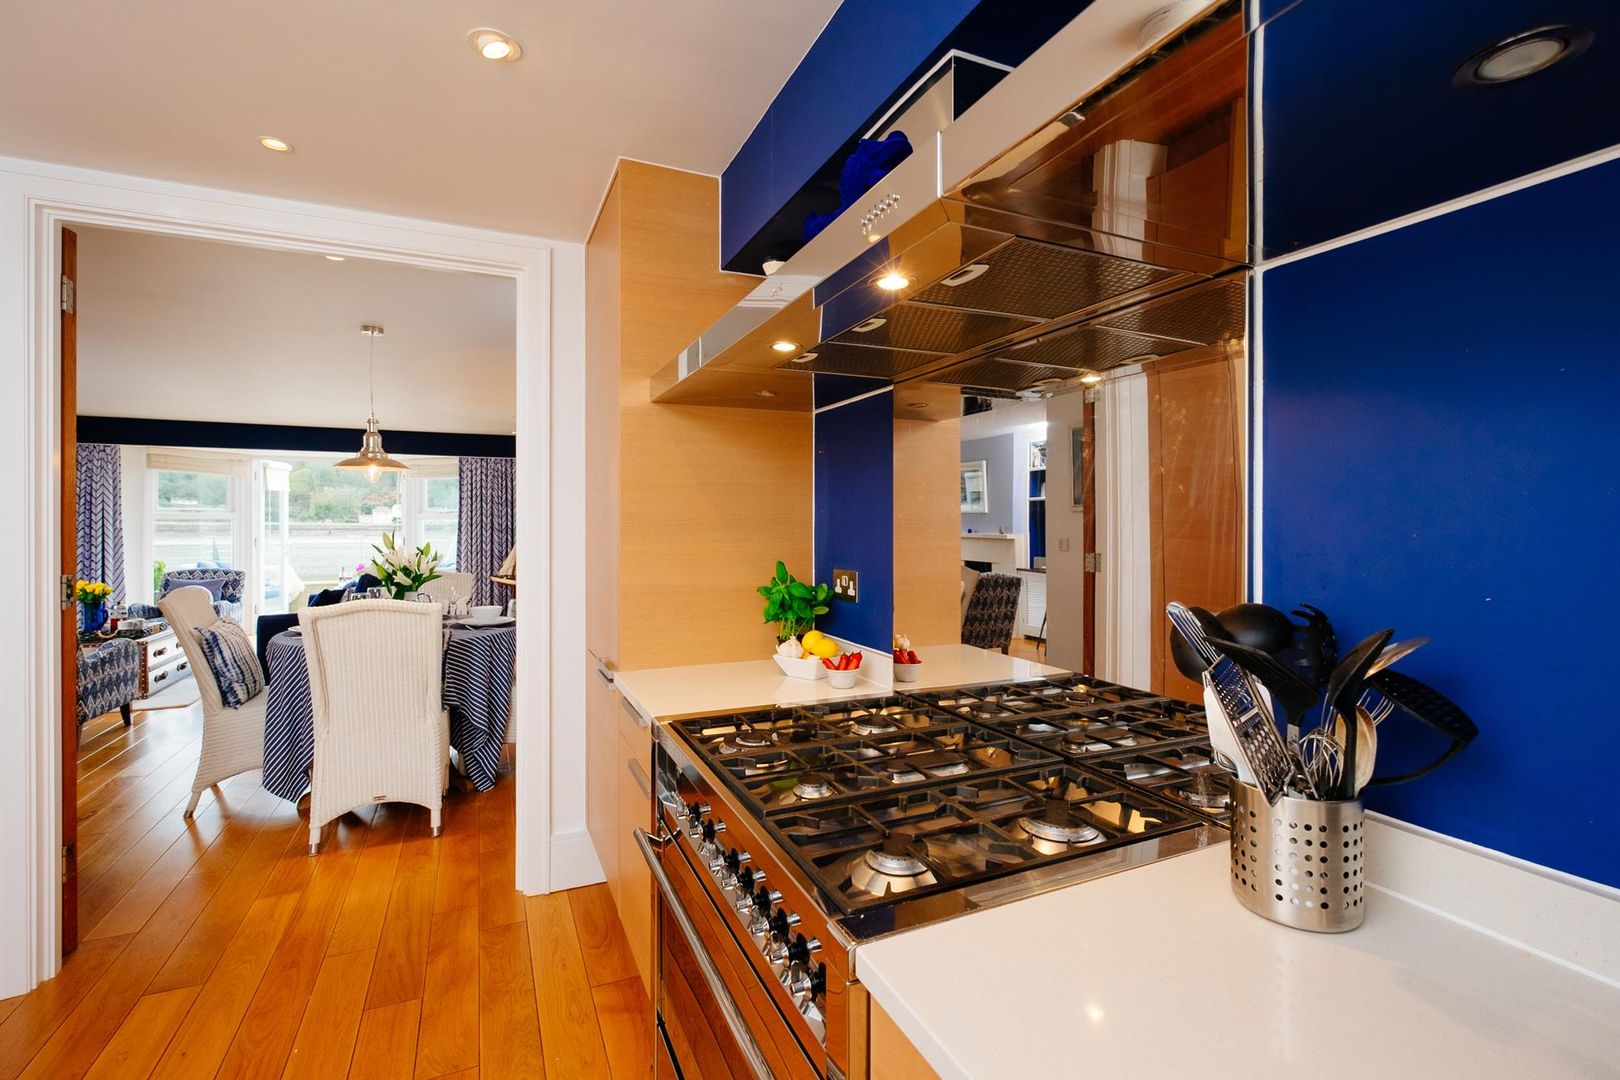 homify Kitchen kitchen,blue,wooden floor,holiday home,interior